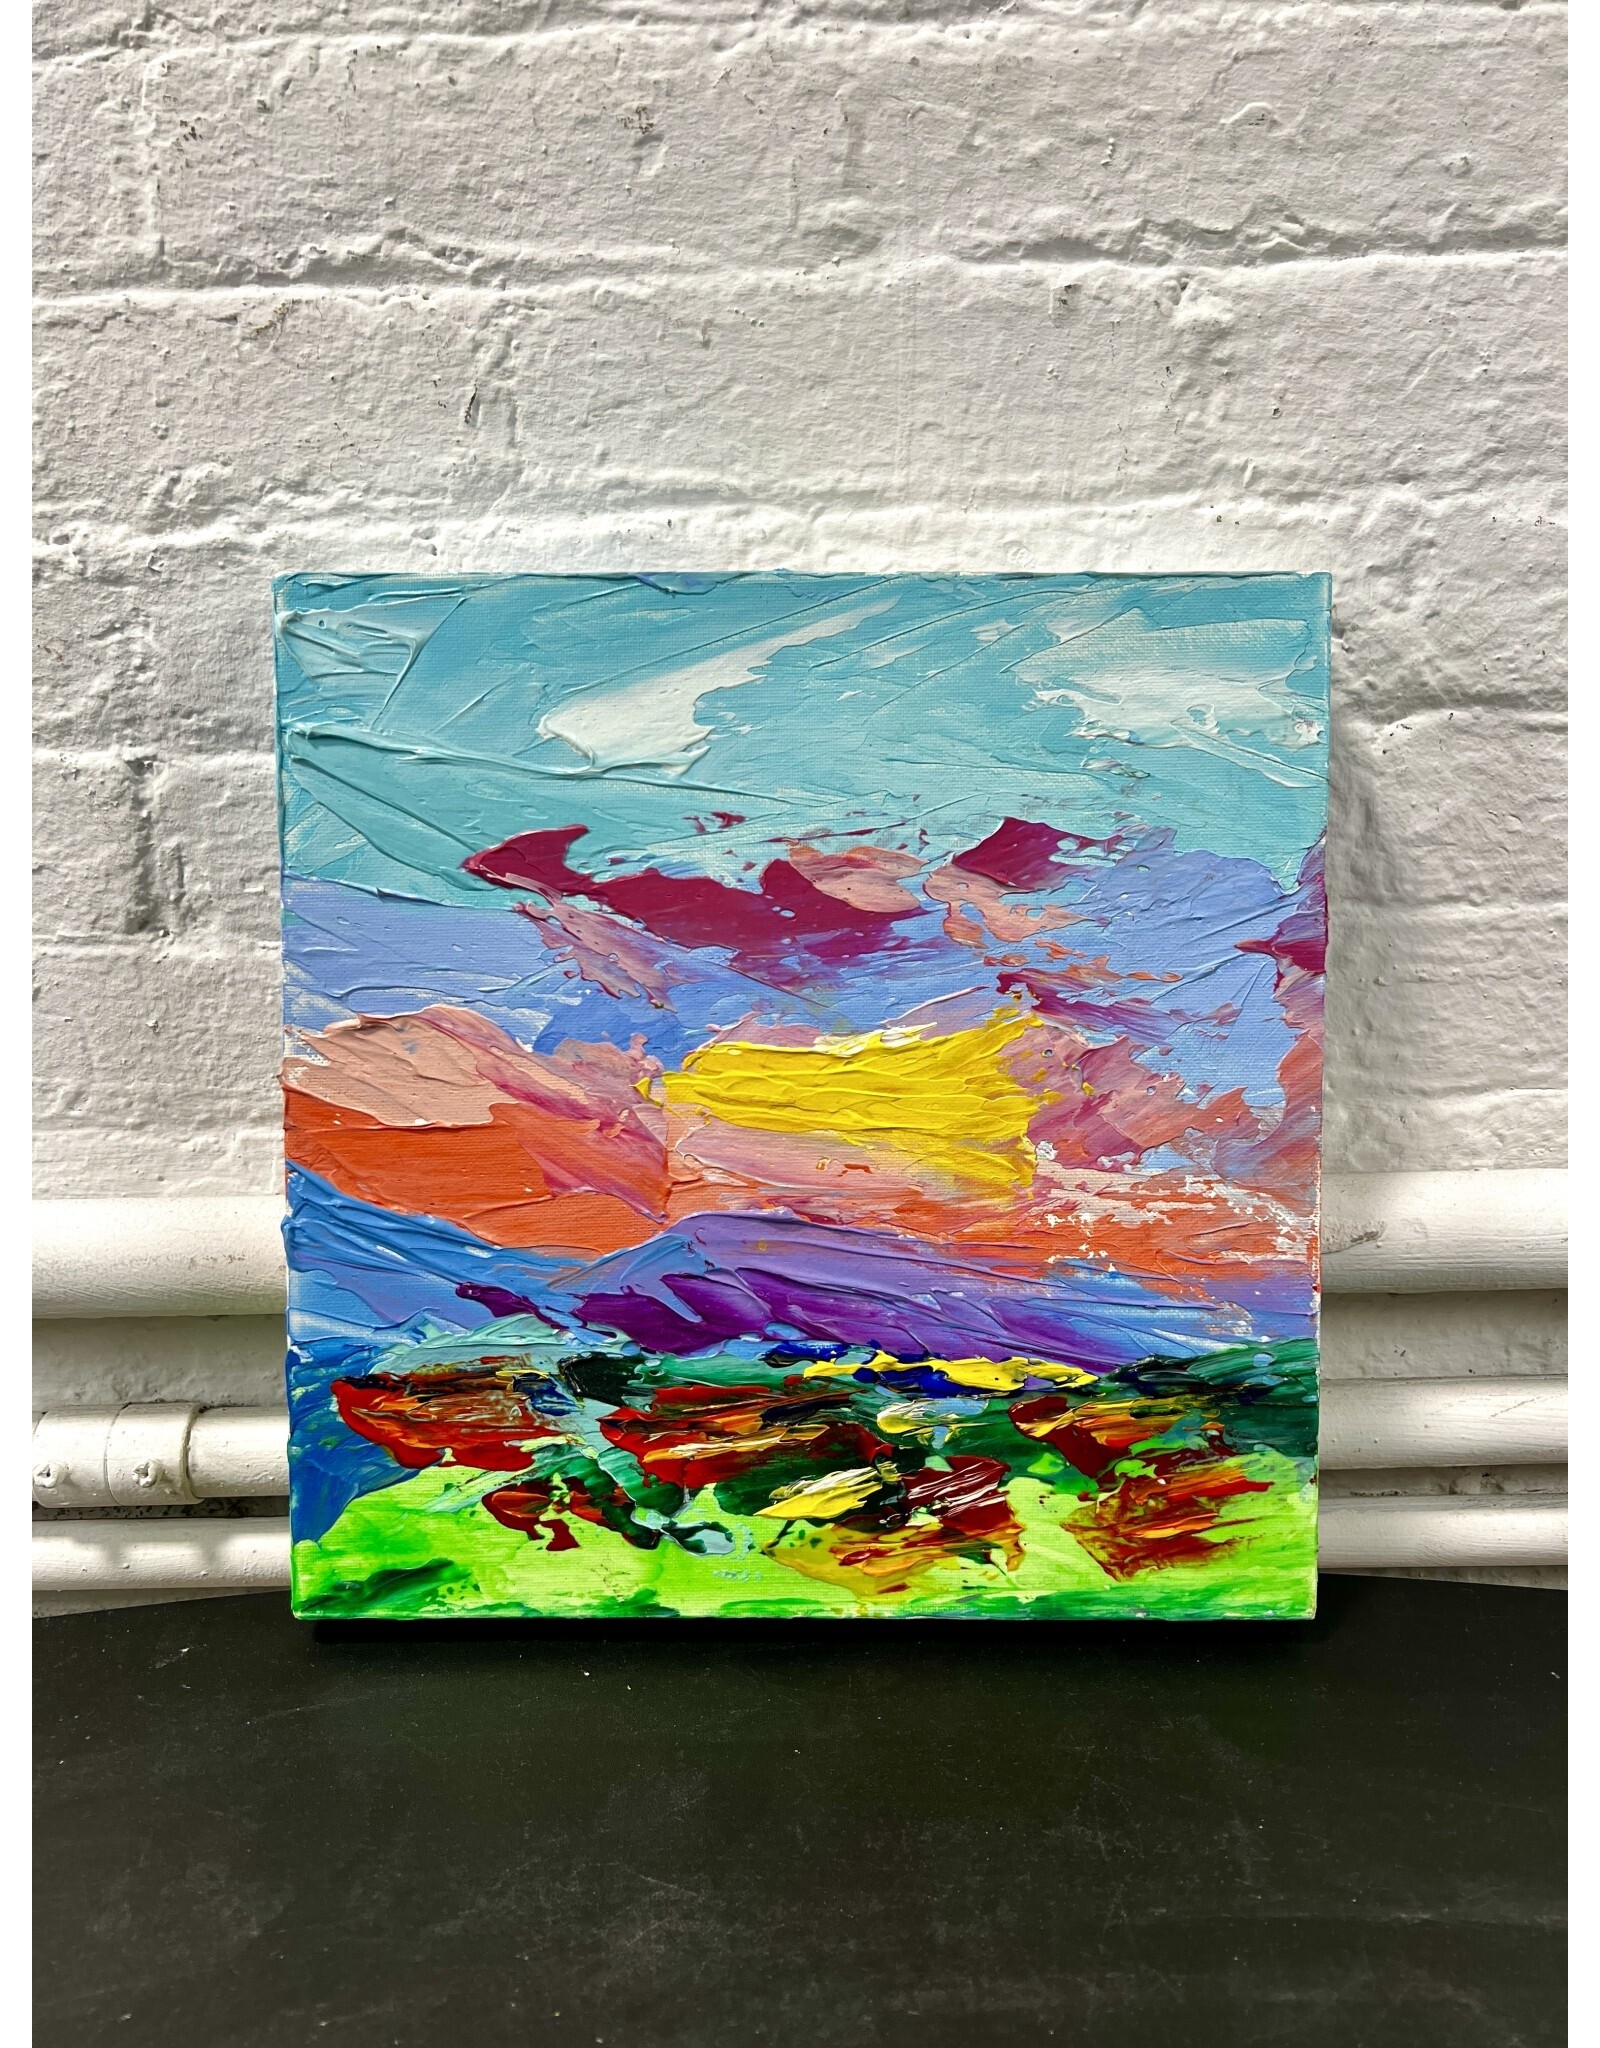 Autumn Sky, oil on canvas, sgnd D.K. 2020